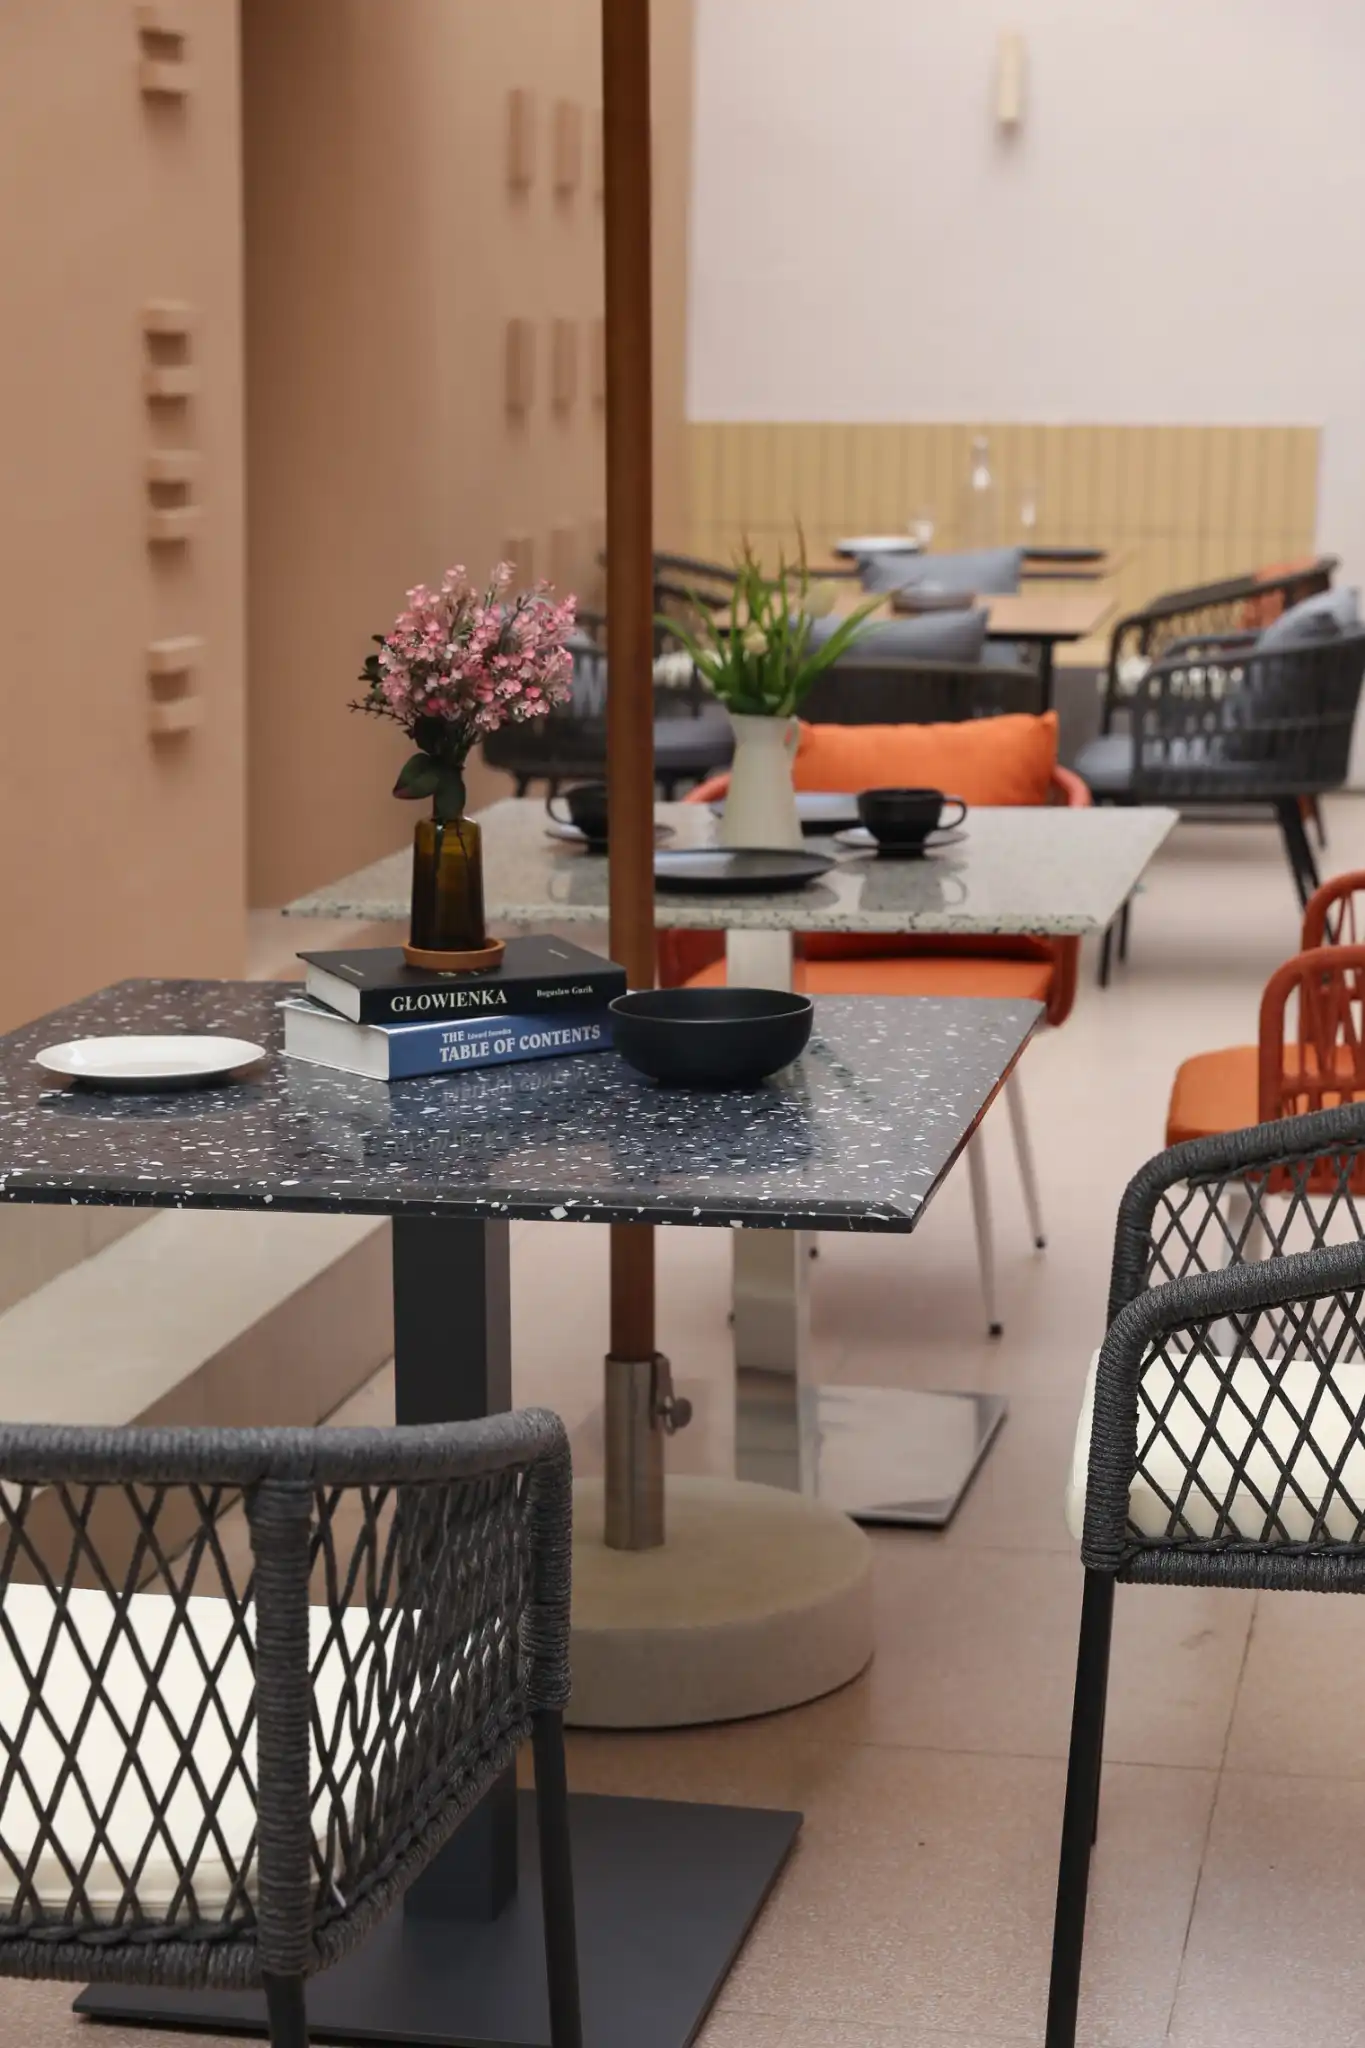 โต๊ะกินข้าว Terrazzo หินคุณภาพสูง ให้ผิวสัมผัส งดงามแบบธรรมชาติ